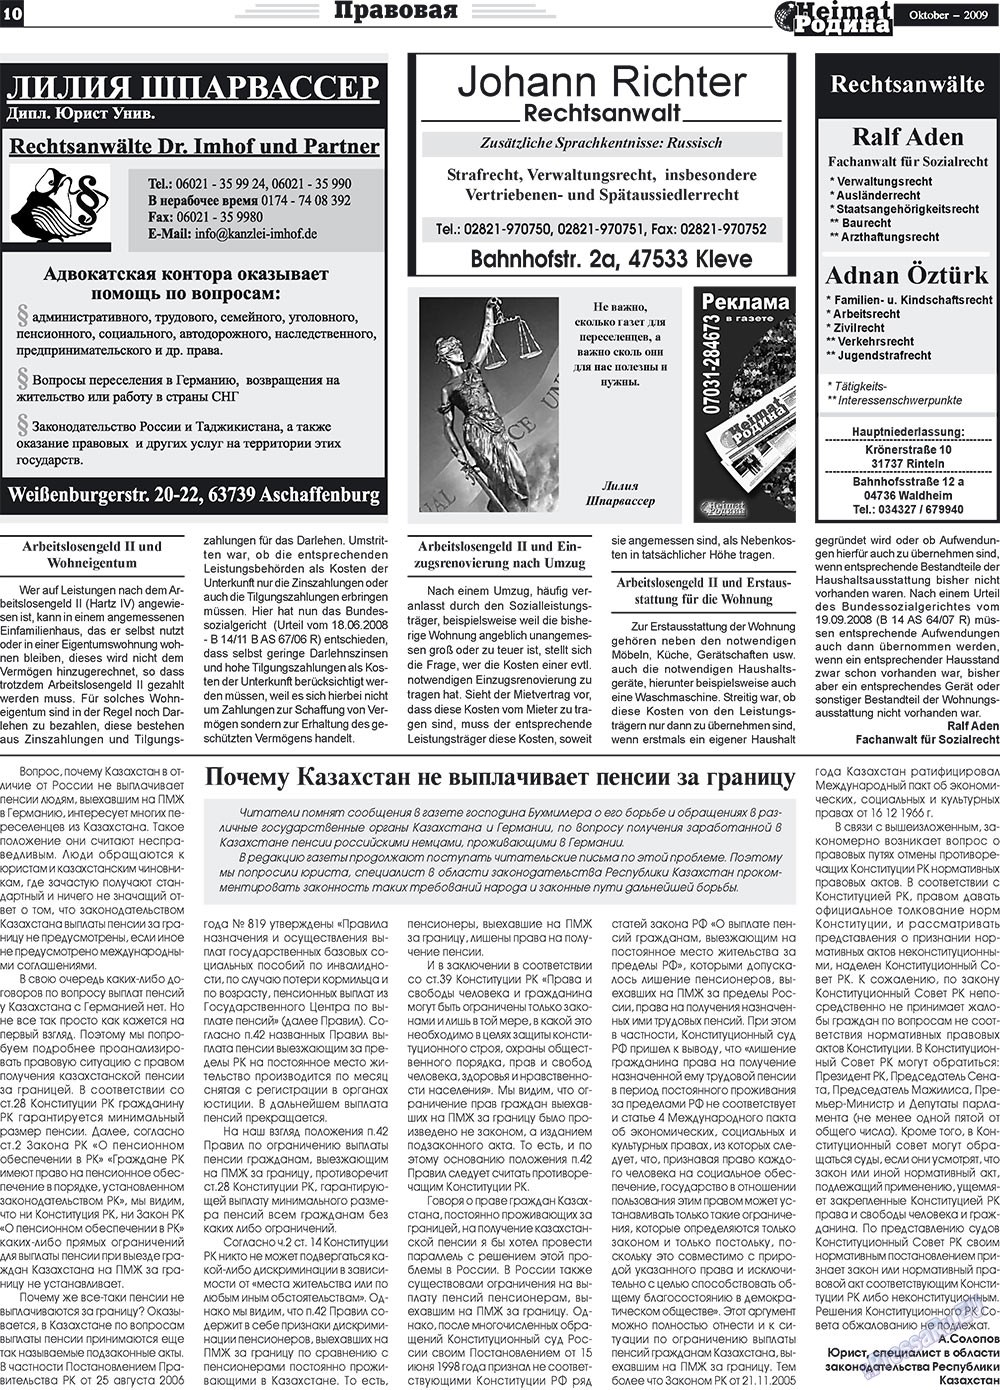 Heimat-Родина (газета). 2009 год, номер 10, стр. 10